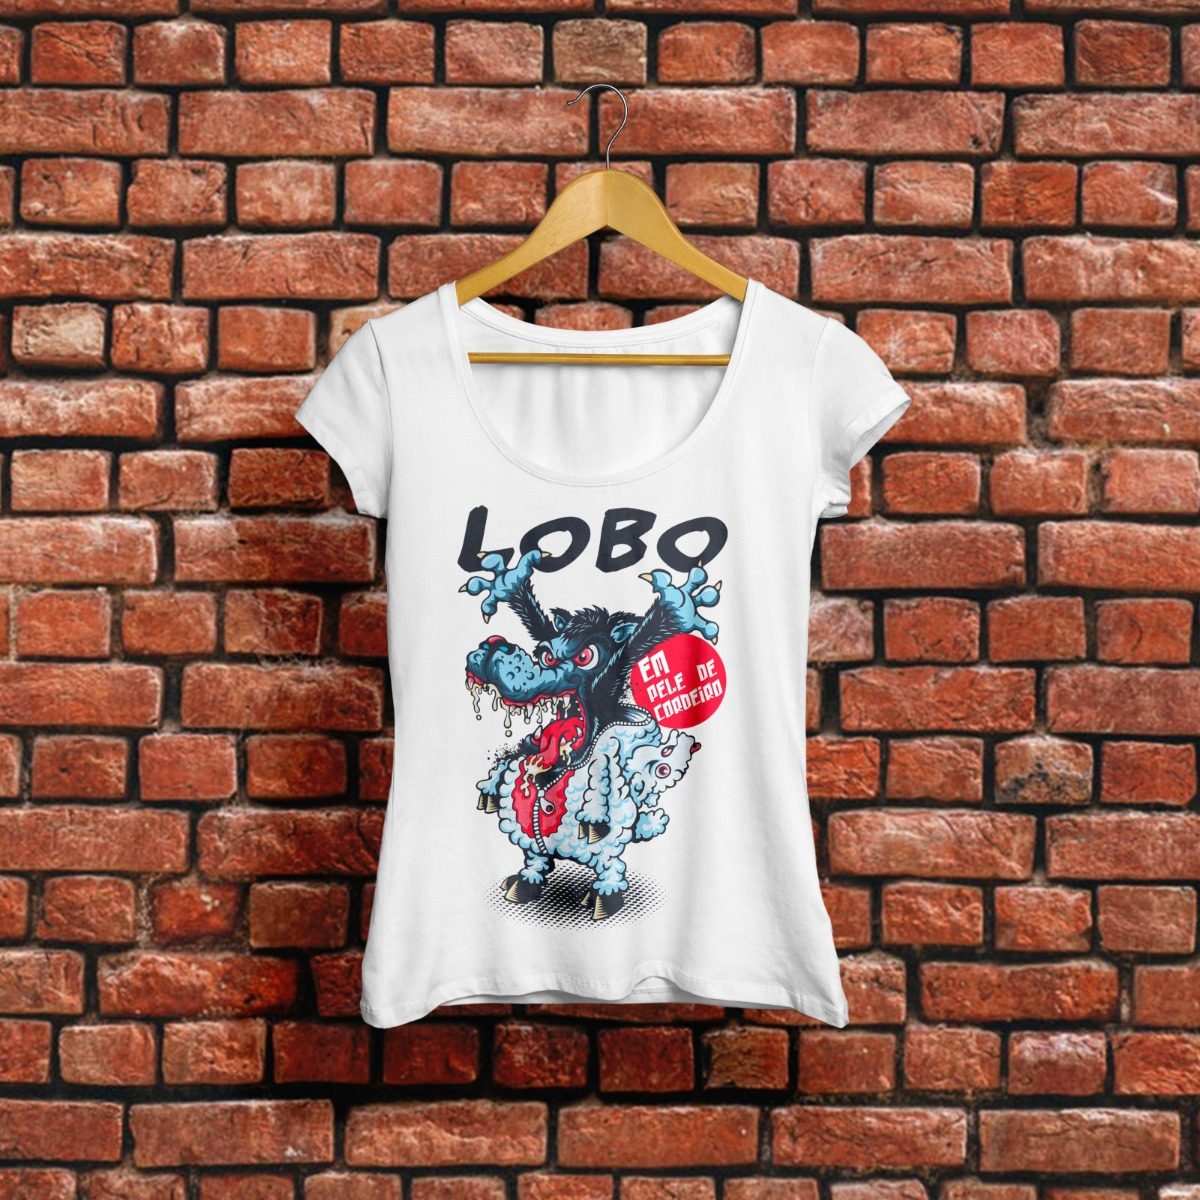 Camiseta Lobo Em Pele De Cordeiro Frases Tumblr R 4990 Em